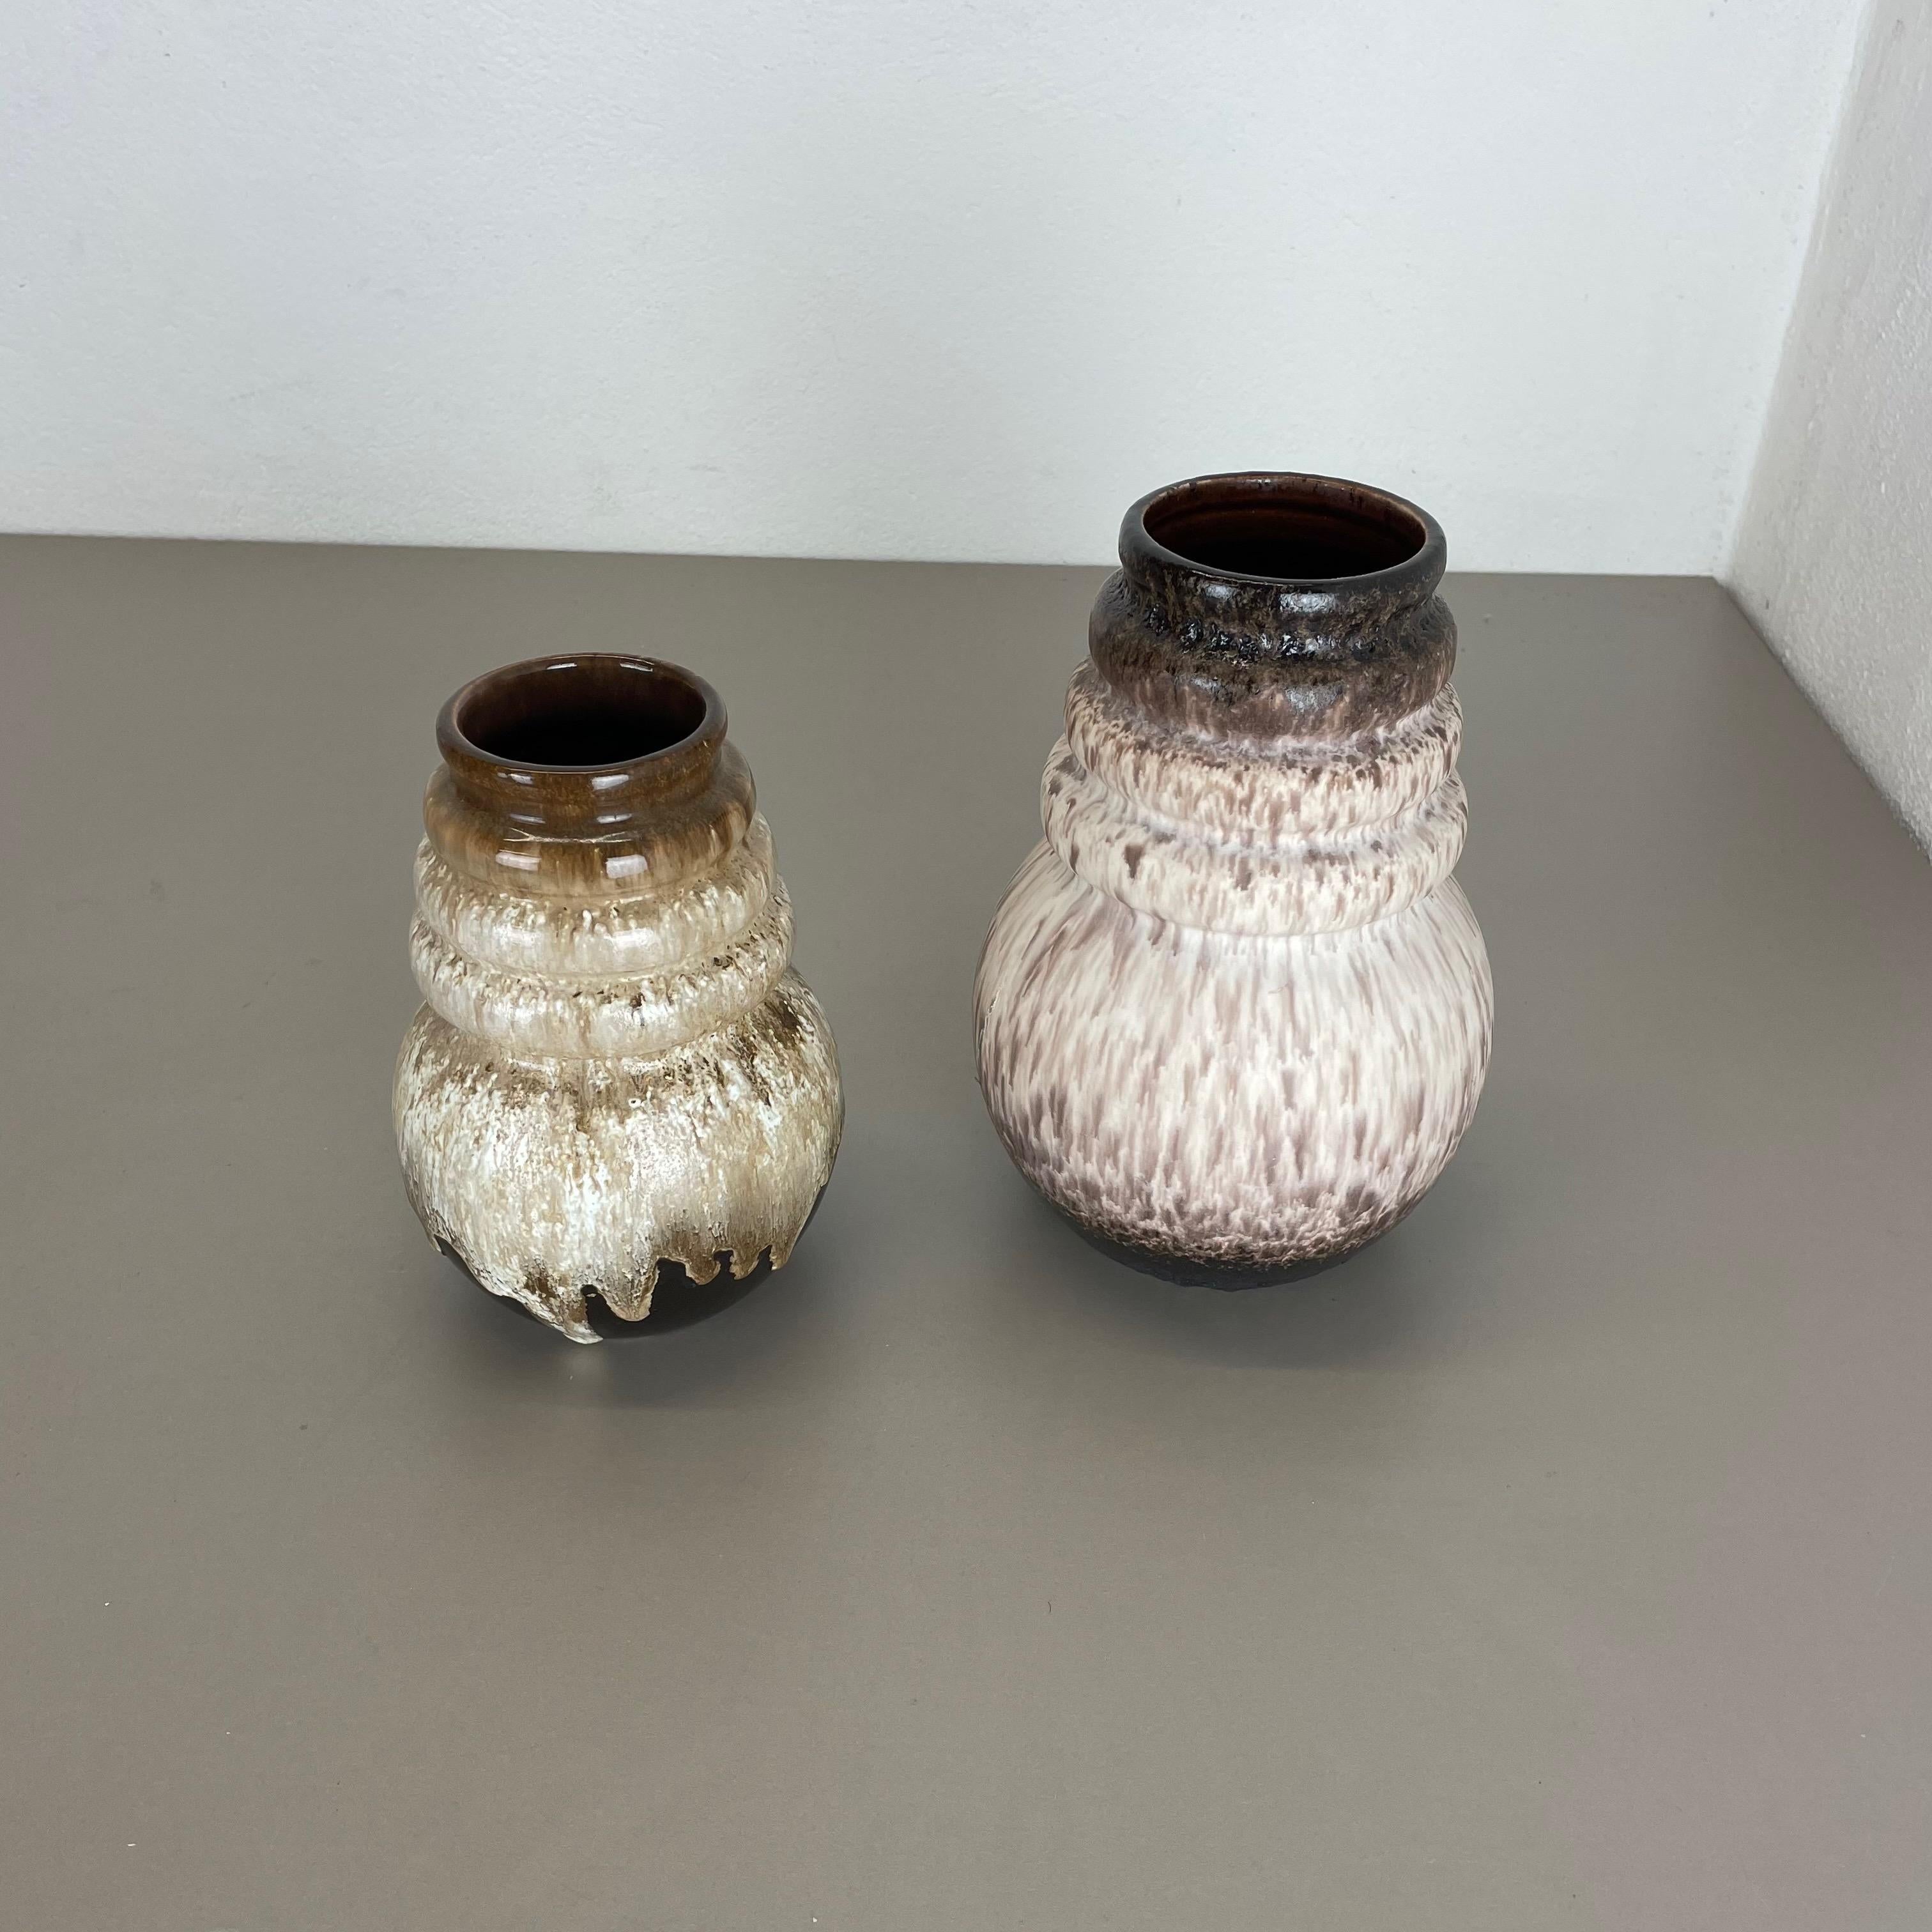 Artikel:

Set aus zwei fetten Lavakunstvasen




Produzent:

Scheurich, Deutschland



Jahrzehnt:

1970s




Diese originalen Vintage-Vasen wurden in den 1970er Jahren in Deutschland hergestellt. Sie ist aus Keramik in fetter